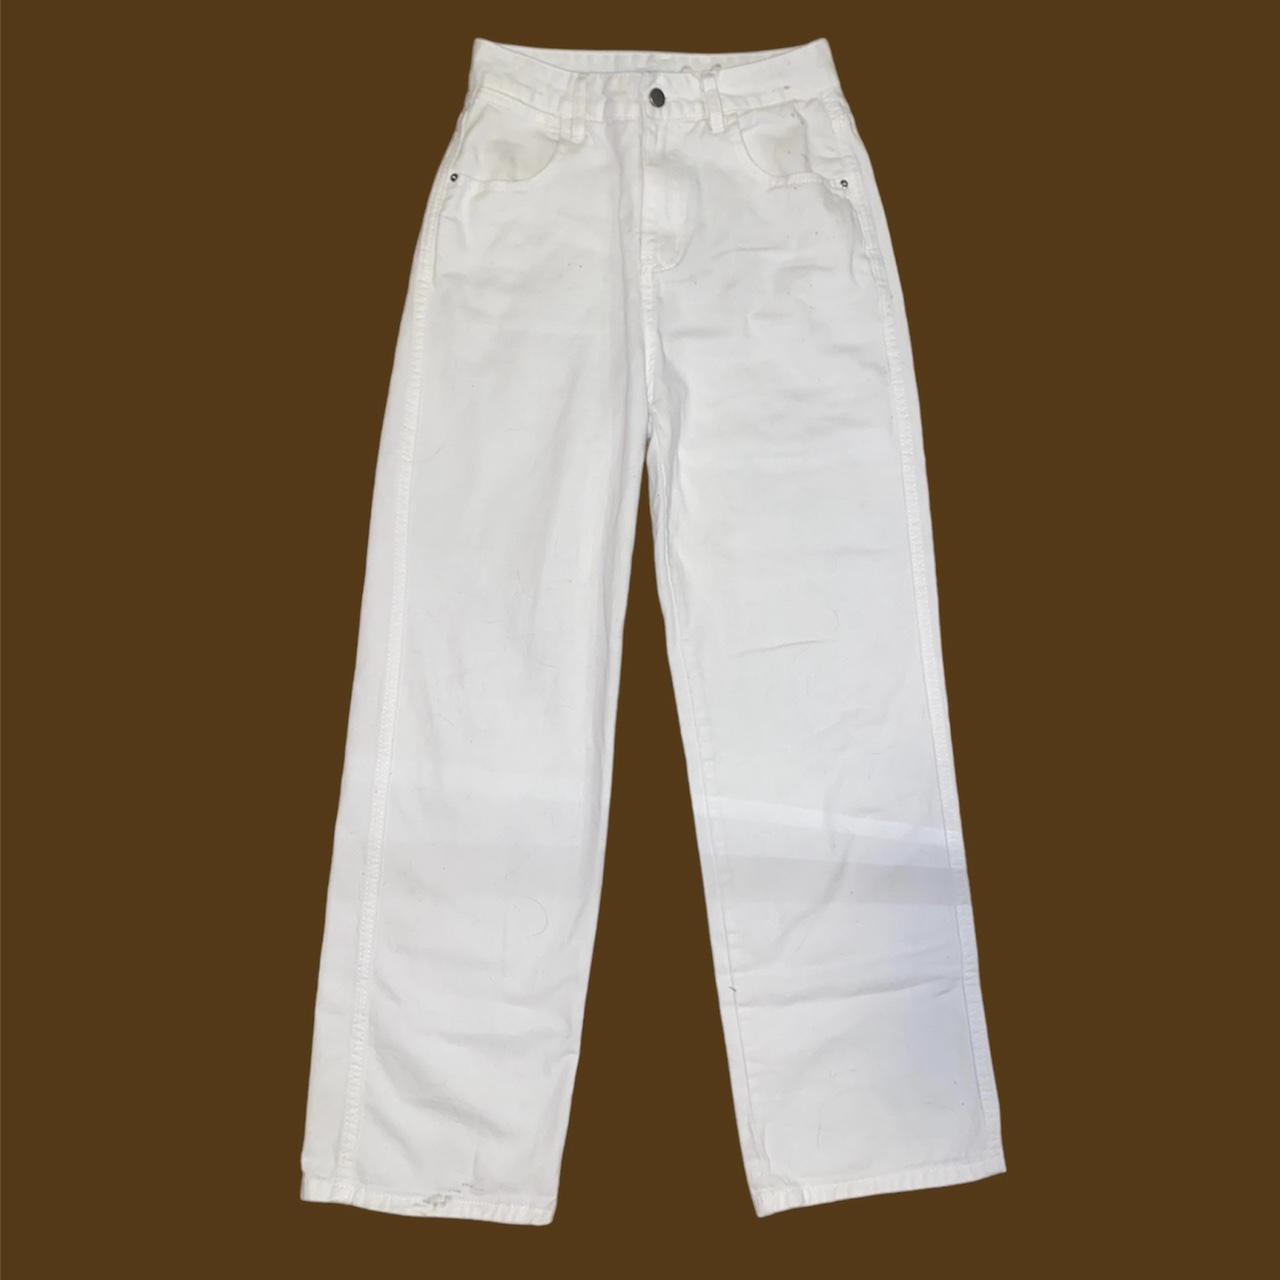 Daxuen Streetwear Hi Rise White Jean - Depop